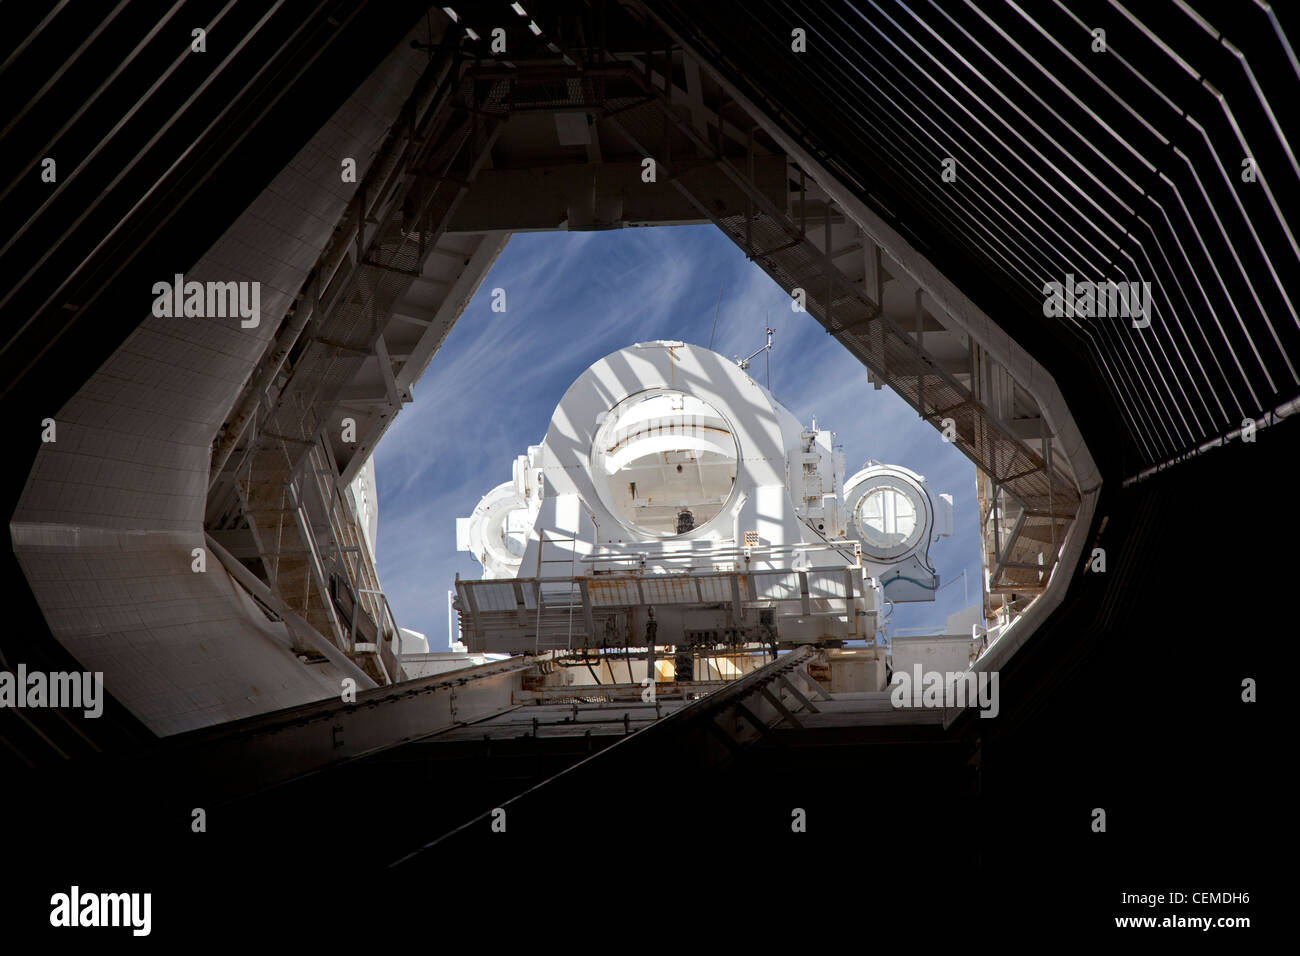 Vende, Arizona - L'MMath-Pierce telescopio solare al Kitt Peak National Observatory, il più grande del mondo di telescopio solare. Foto Stock